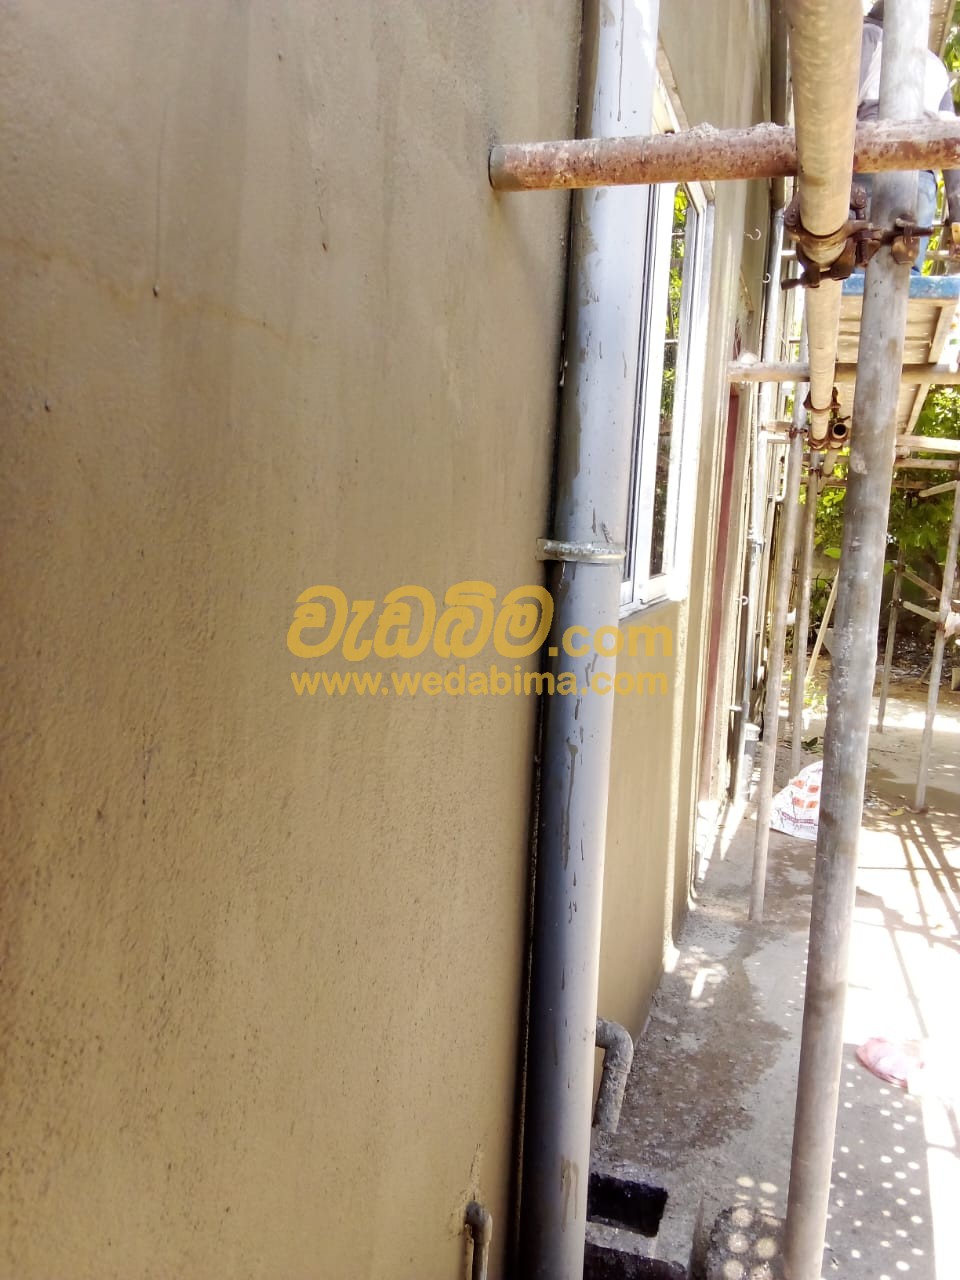 waterproofing companies in sri lanka